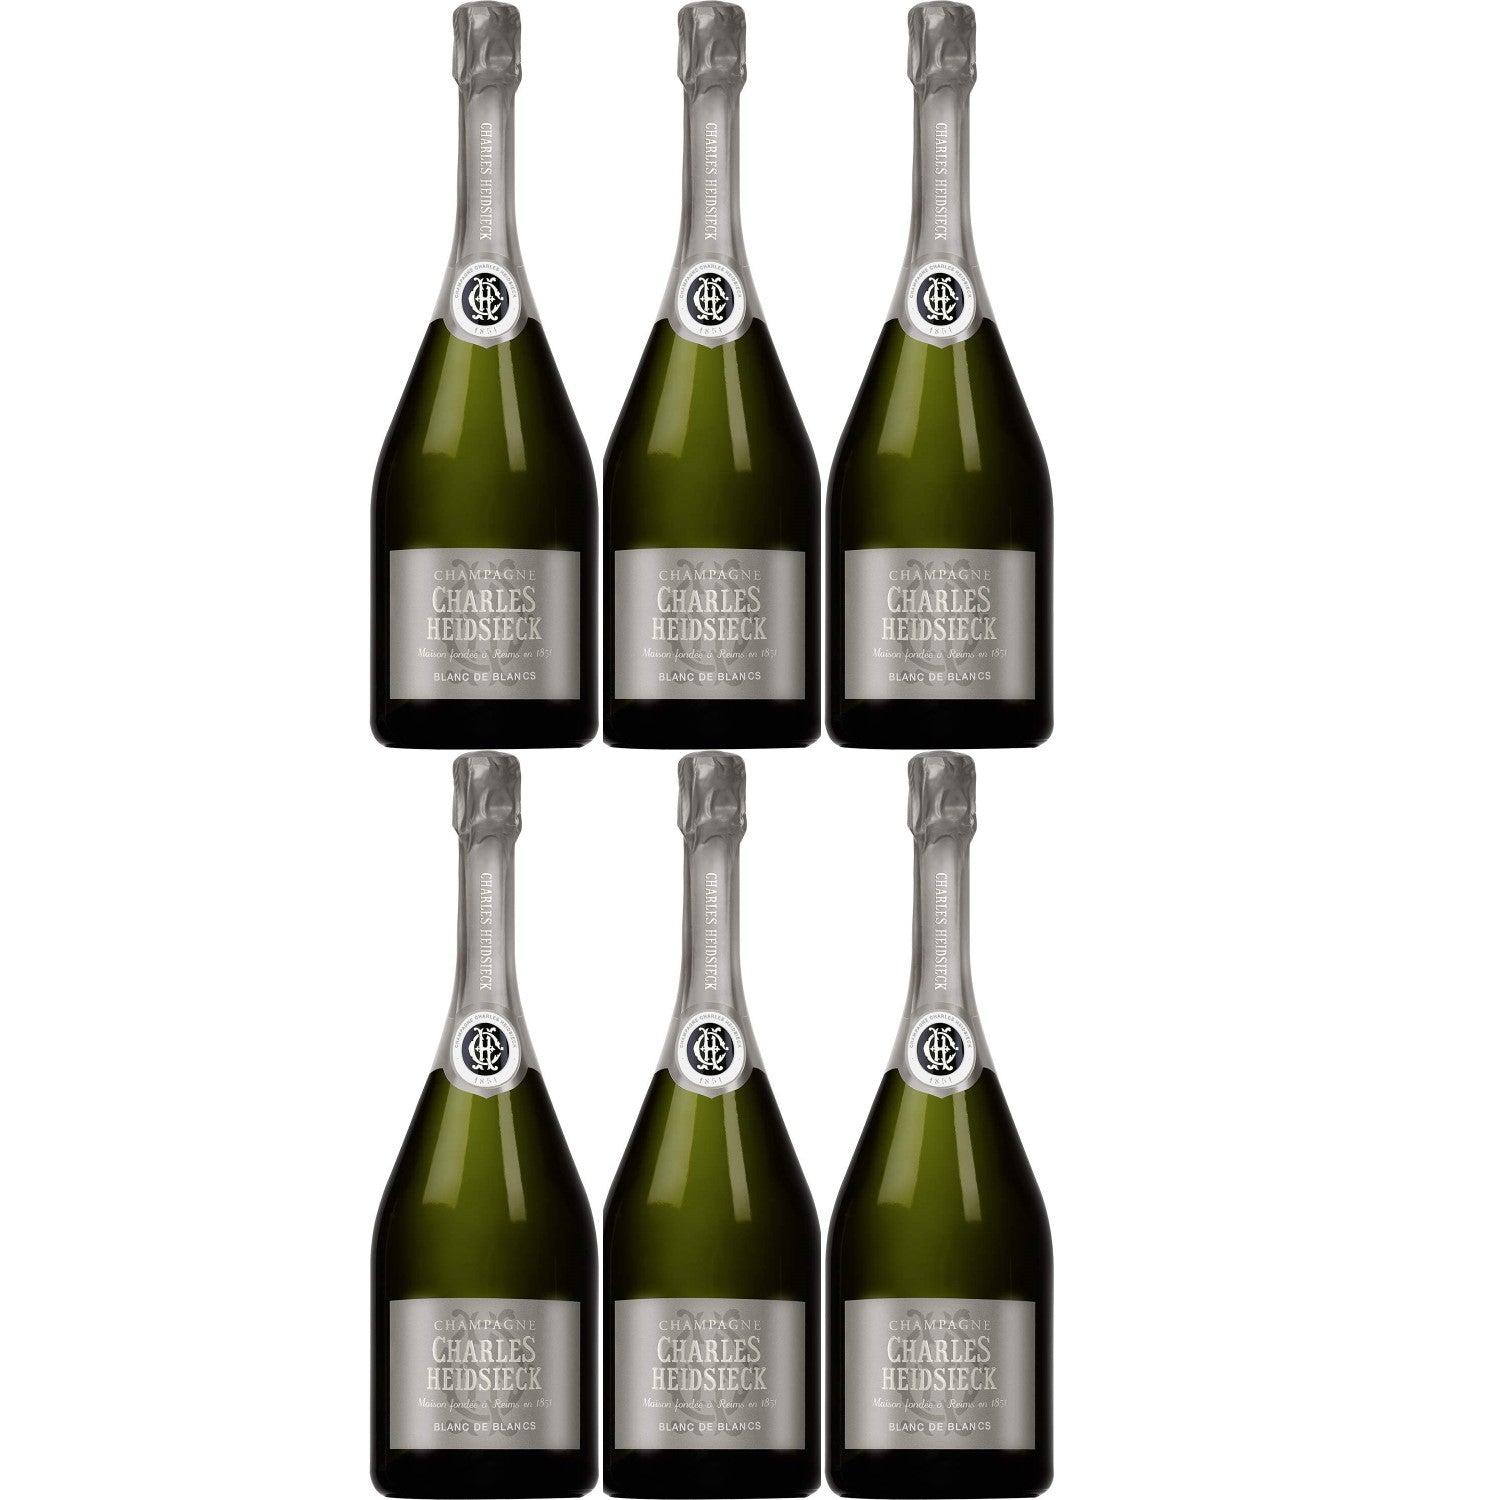 Charles Heidsieck Blanc de Blancs Champagne Champagner Schaumwein Frankreich (6 x 0.75l) - Versanel -